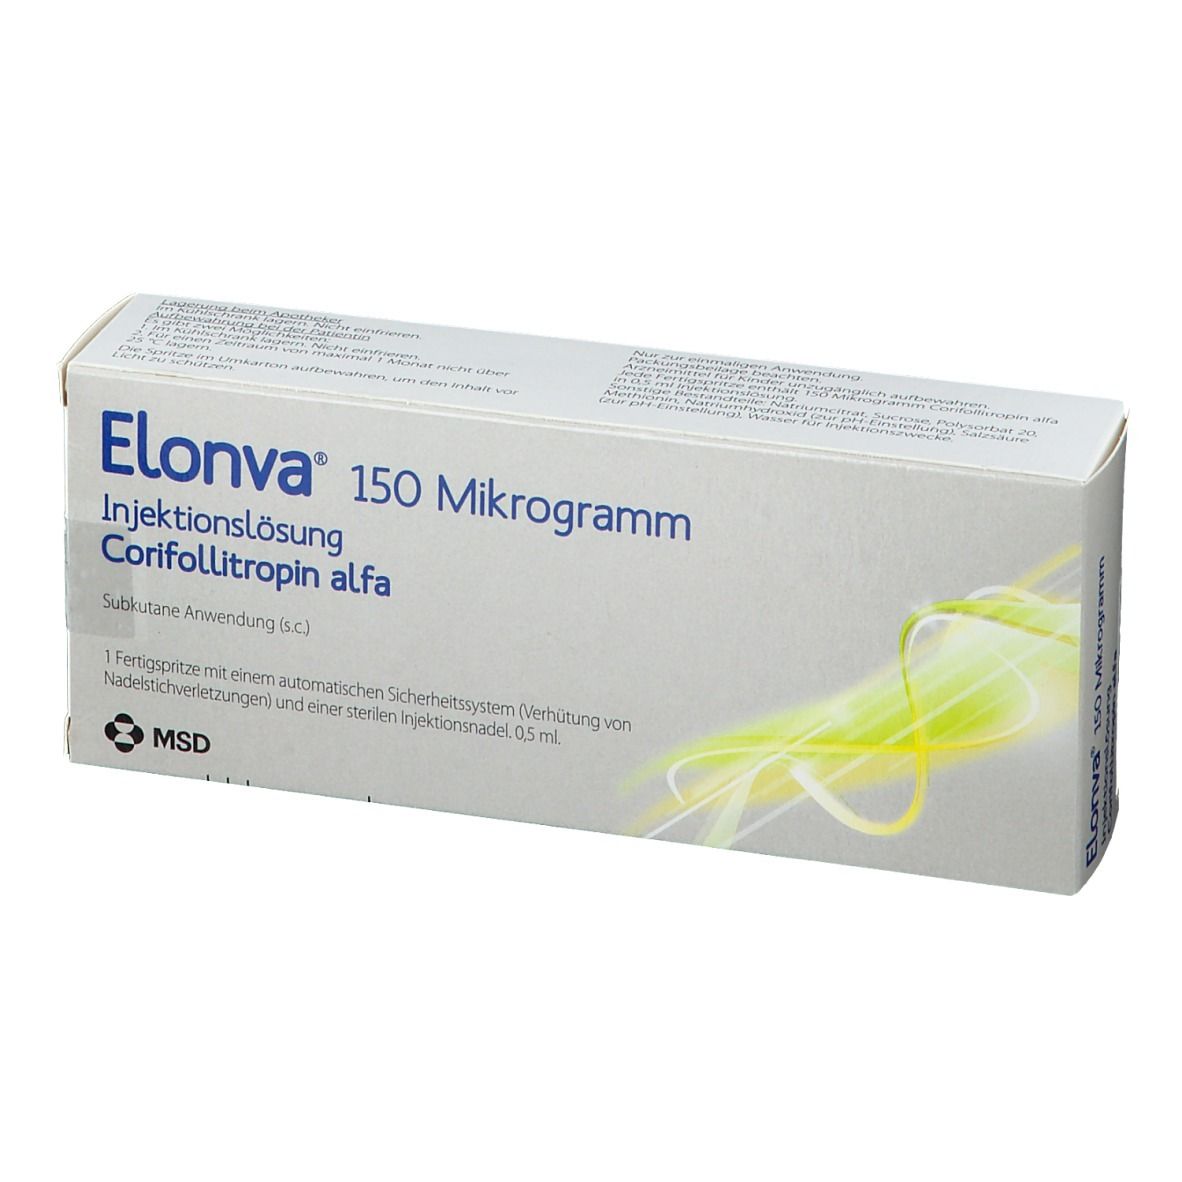 ELONVA® 150 Mikrogramm